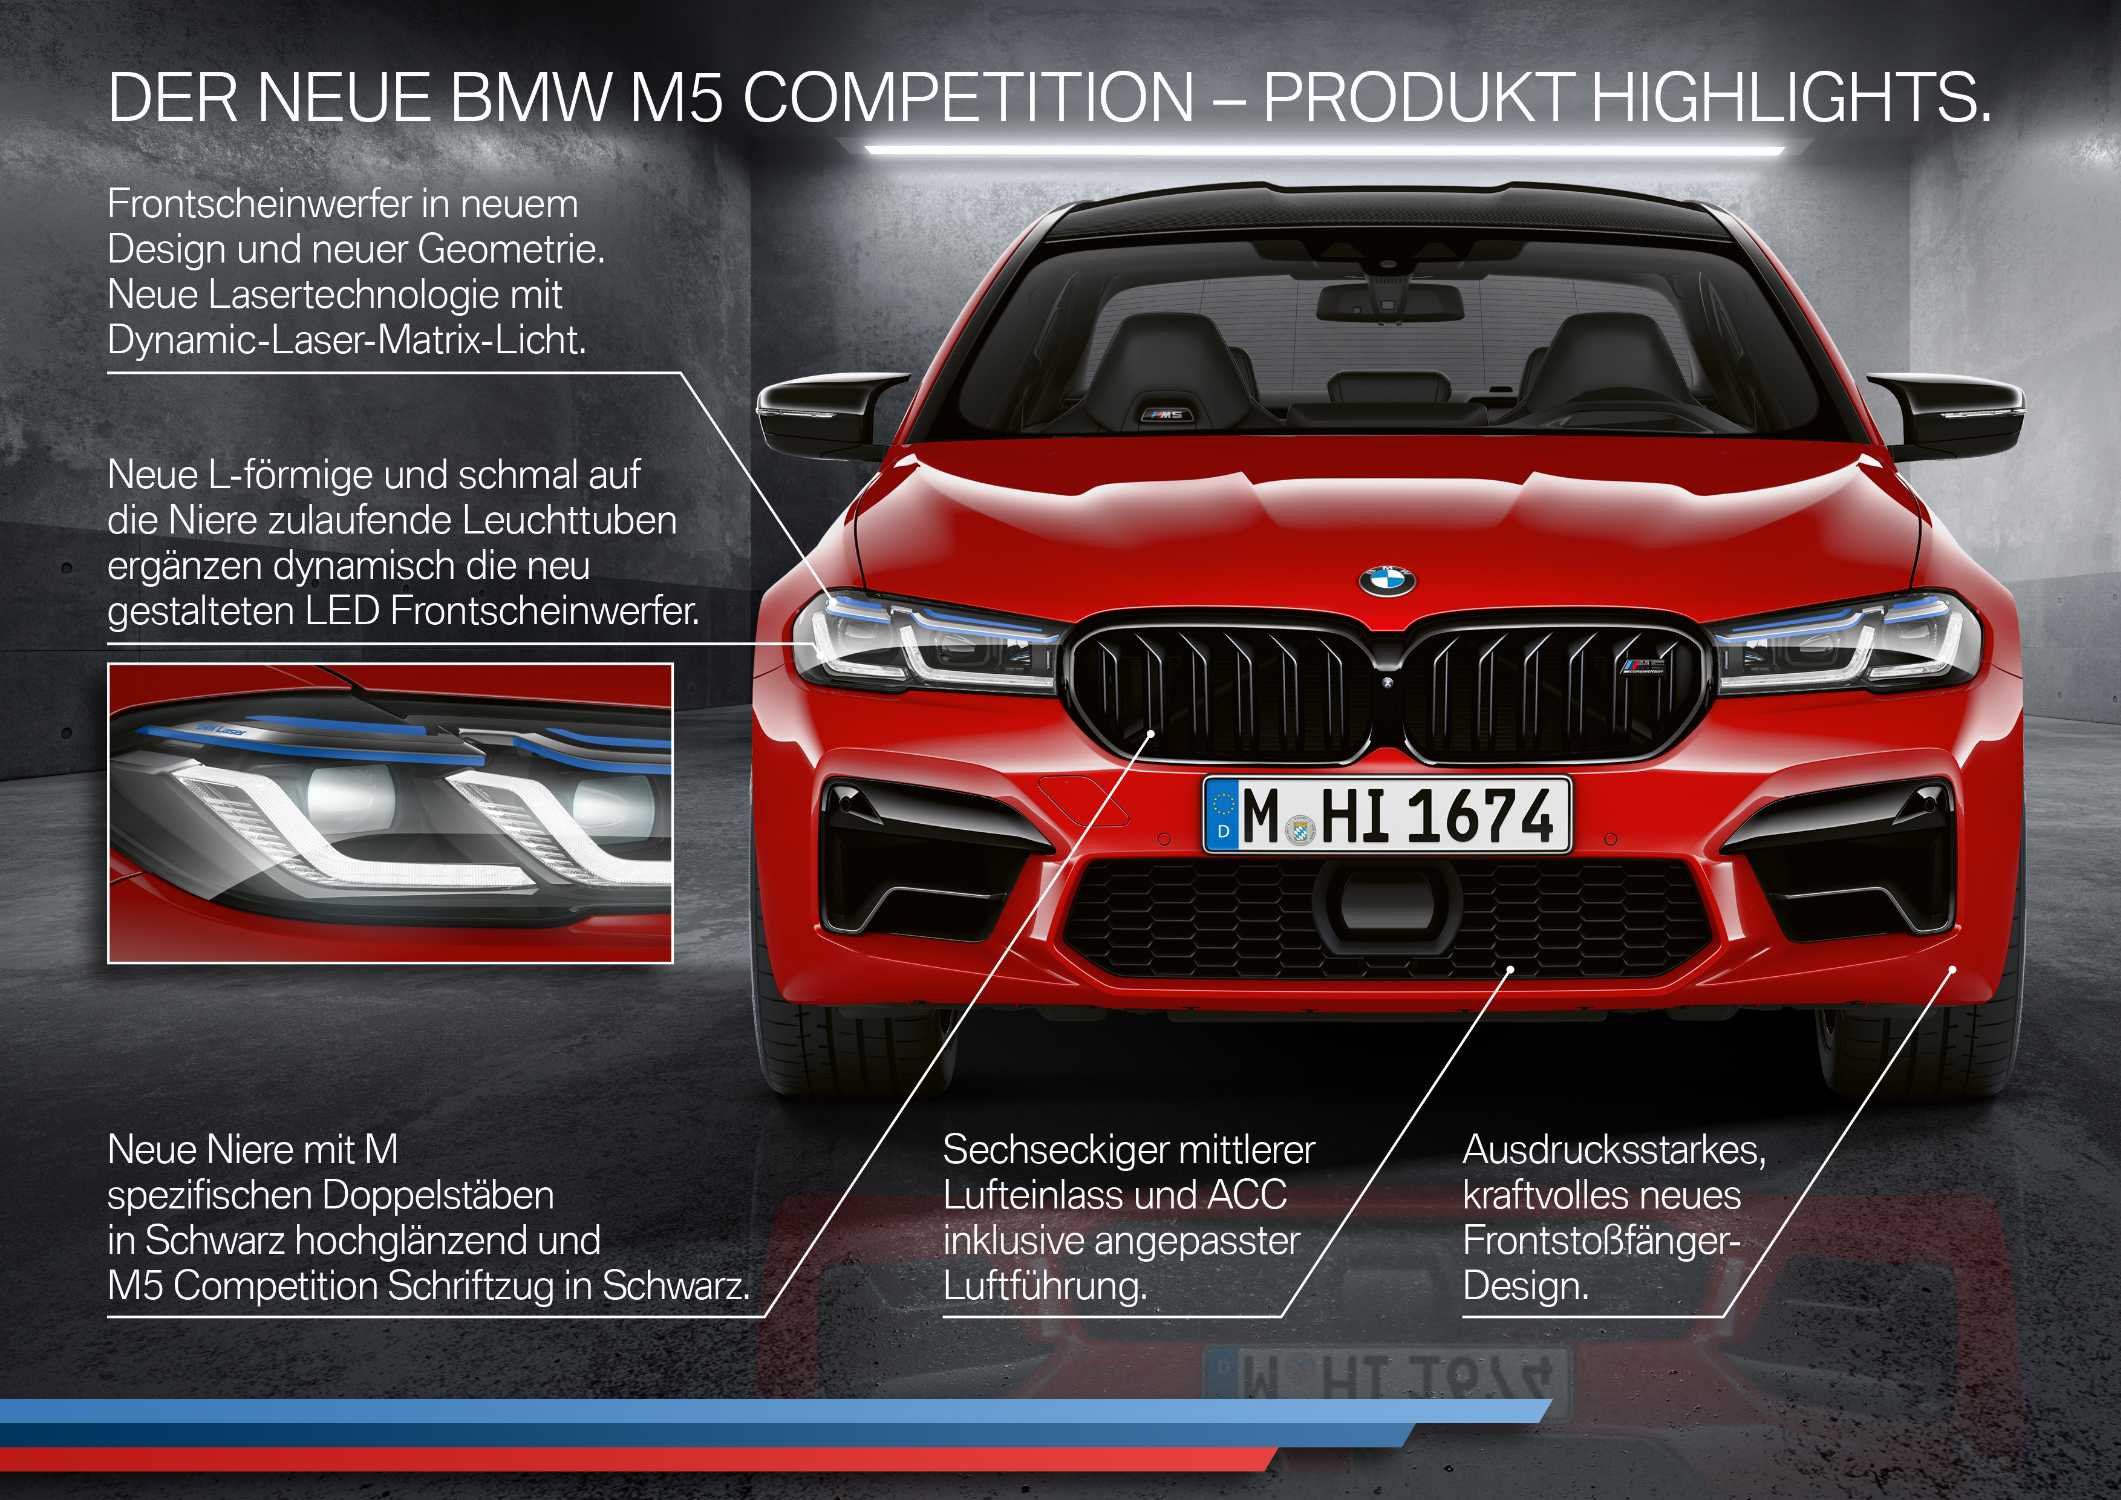 Der neue BMW M5 Competition - Highlights (06/2020).